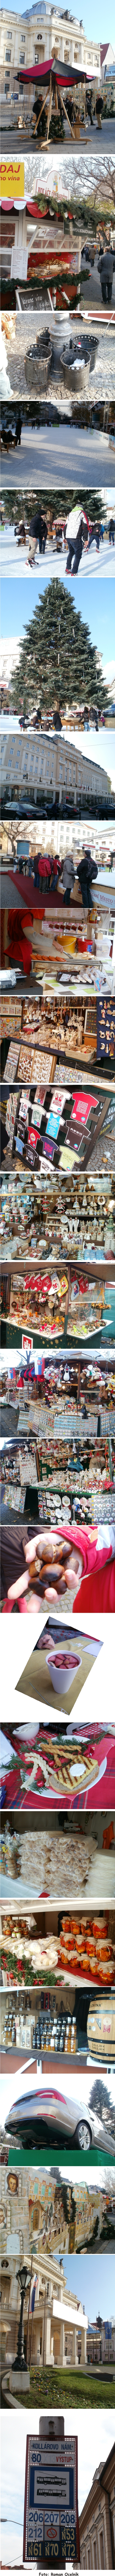 Bratislava vianočný trh